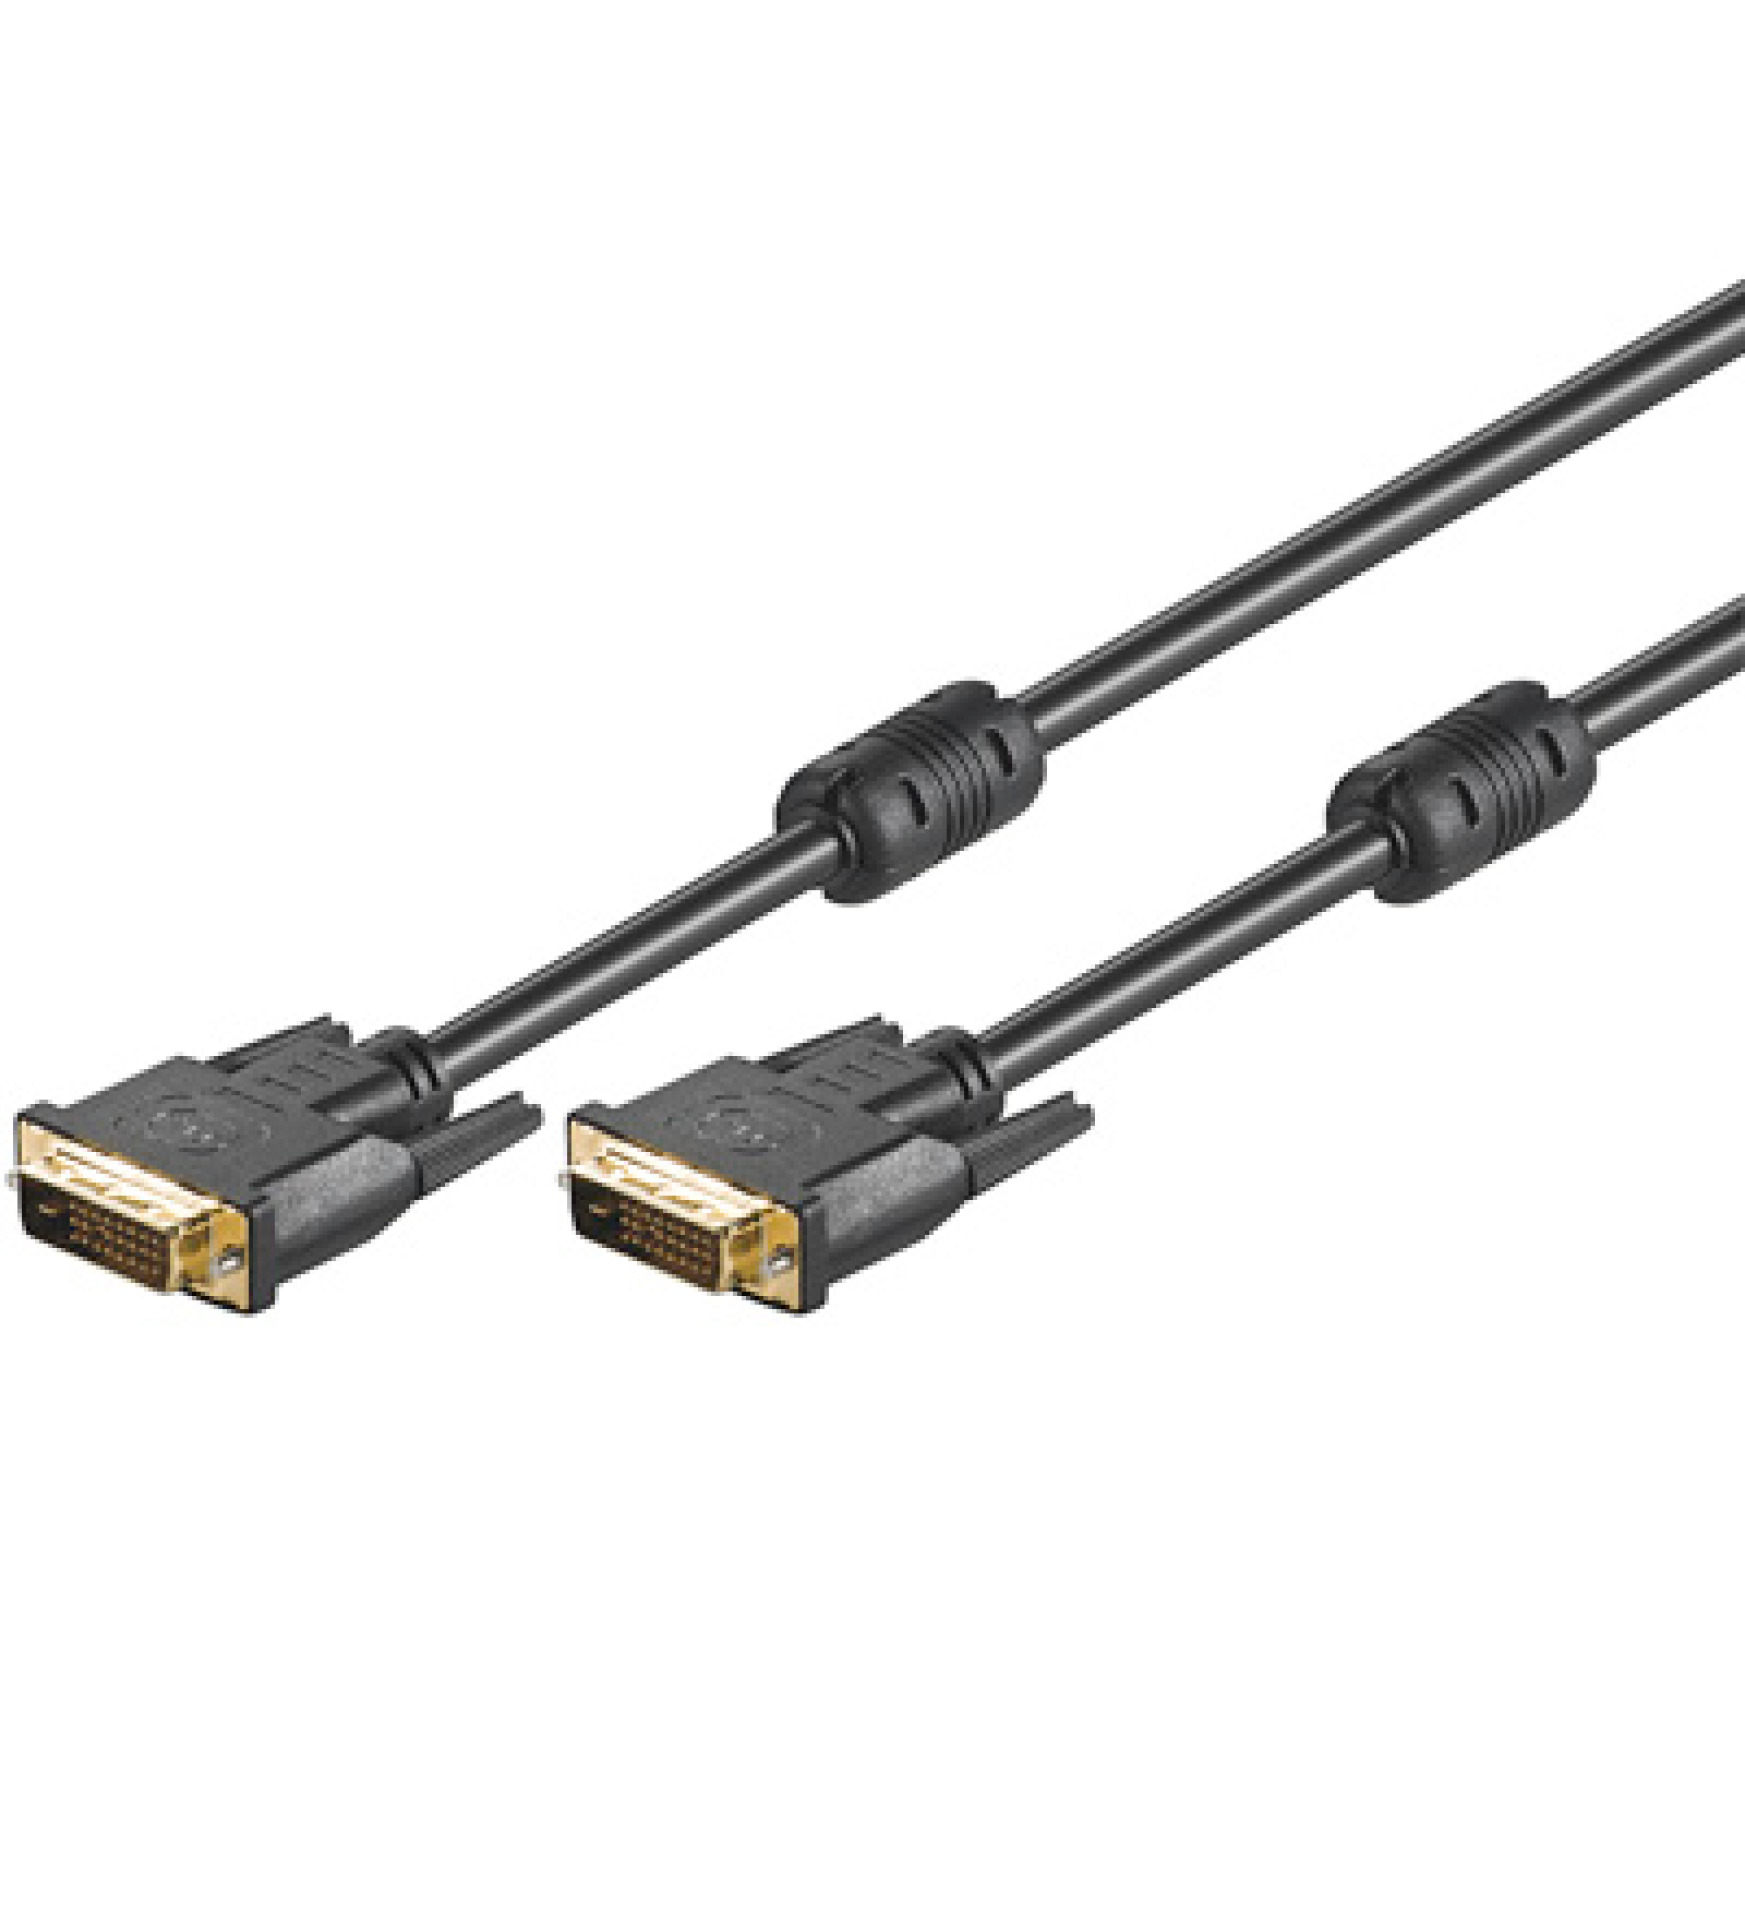 DVI-D Dual-Link Anschlusskabel Stecker/Stecker mit Ferrit, schwarz, 3 m